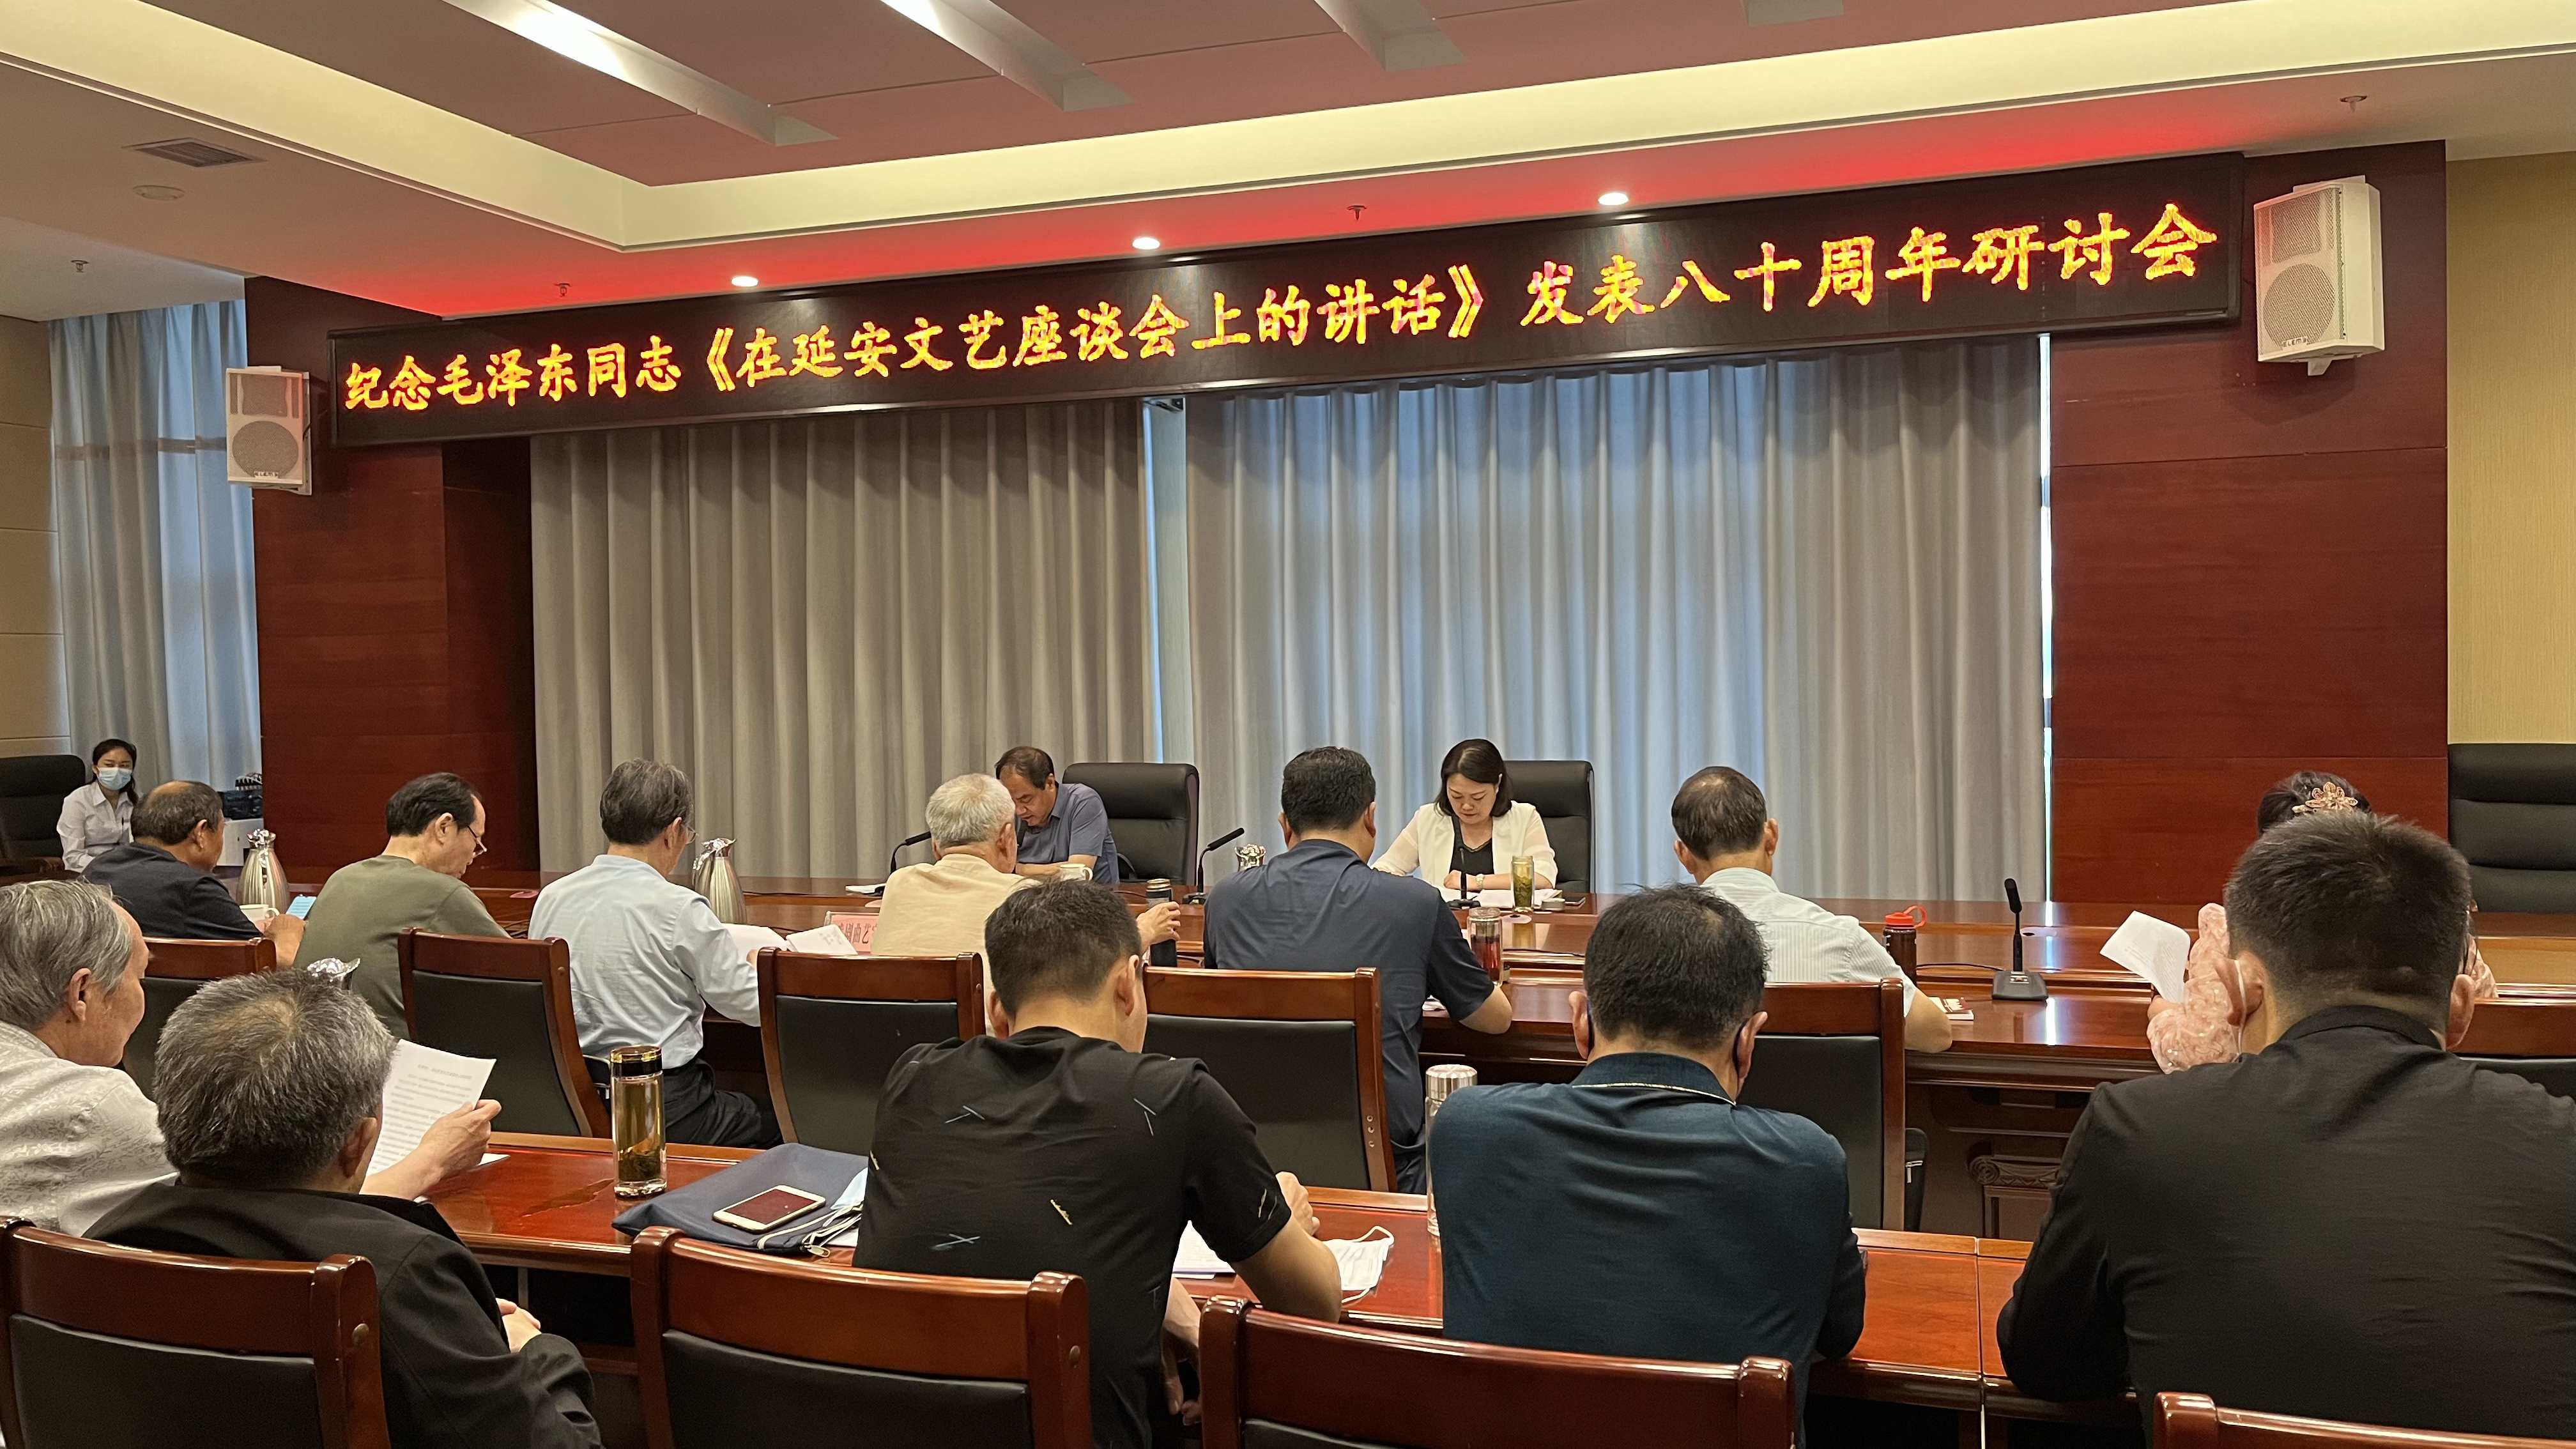 唐河县文联组织召开 纪念毛泽东同志《在延安文艺座谈会上的讲话》 发表八十周年研讨会